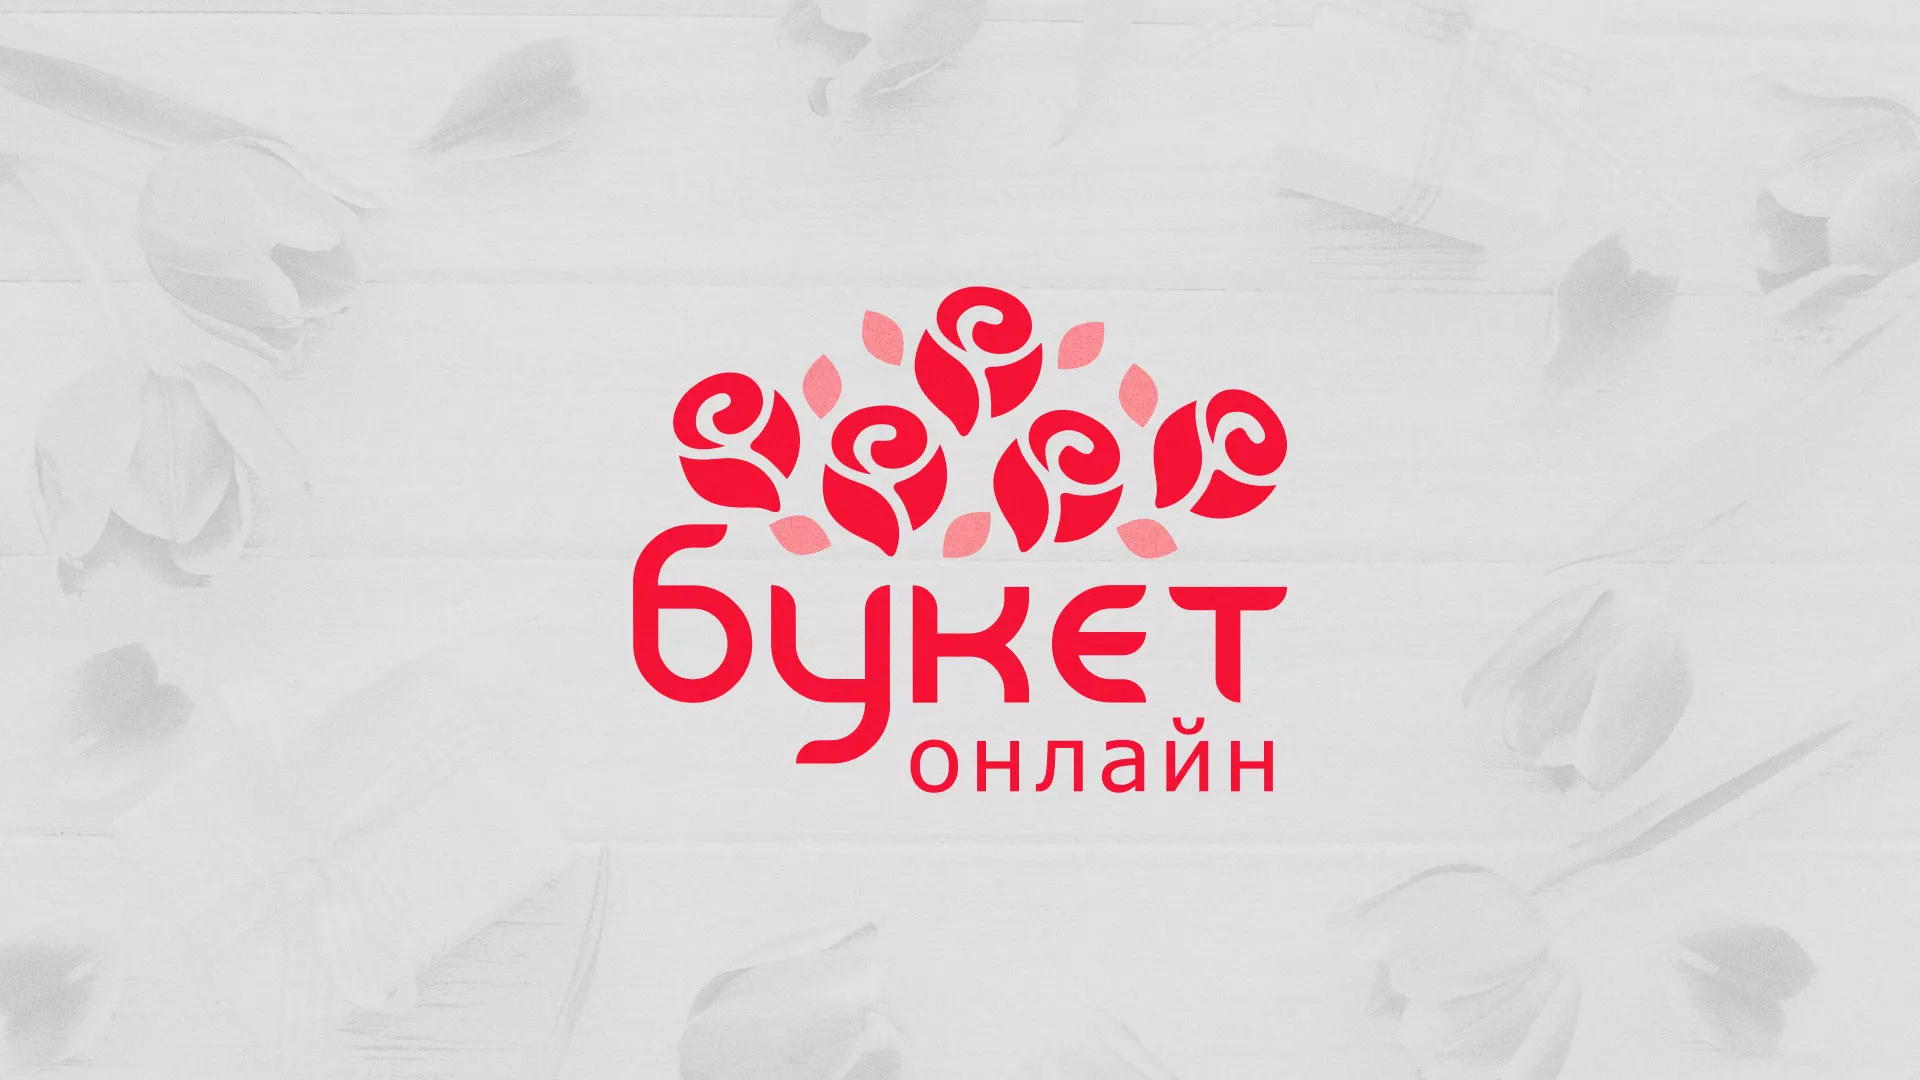 Создание интернет-магазина «Букет-онлайн» по цветам в Ростове-на-Дону